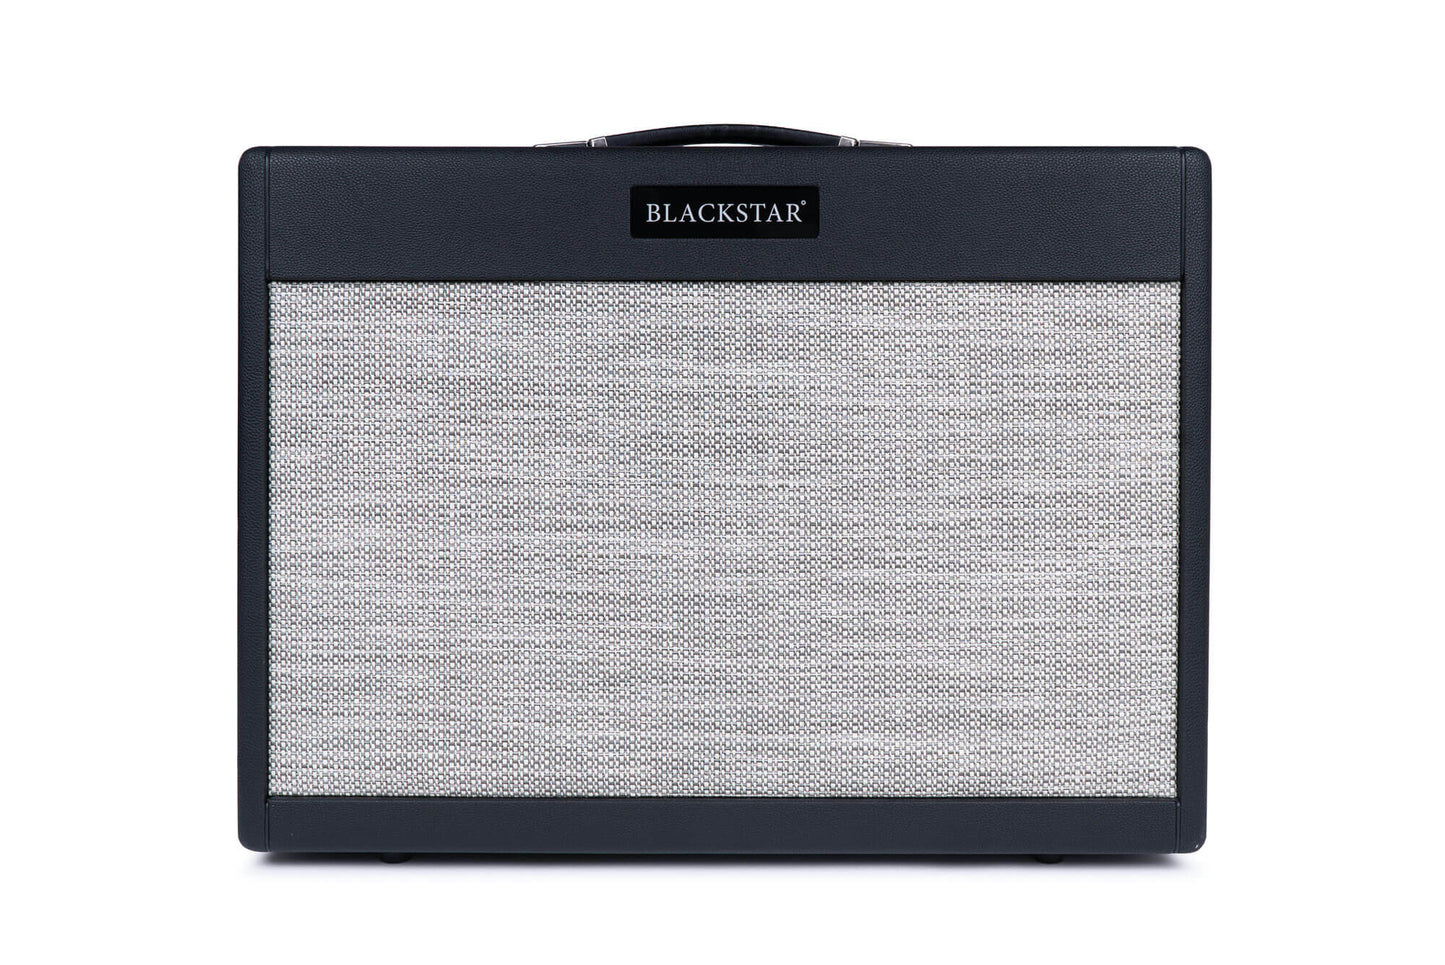 Blackstar ST. JAMES 50 6L6-212 COMBO Guitar Valve Amplifier - Black (Each)